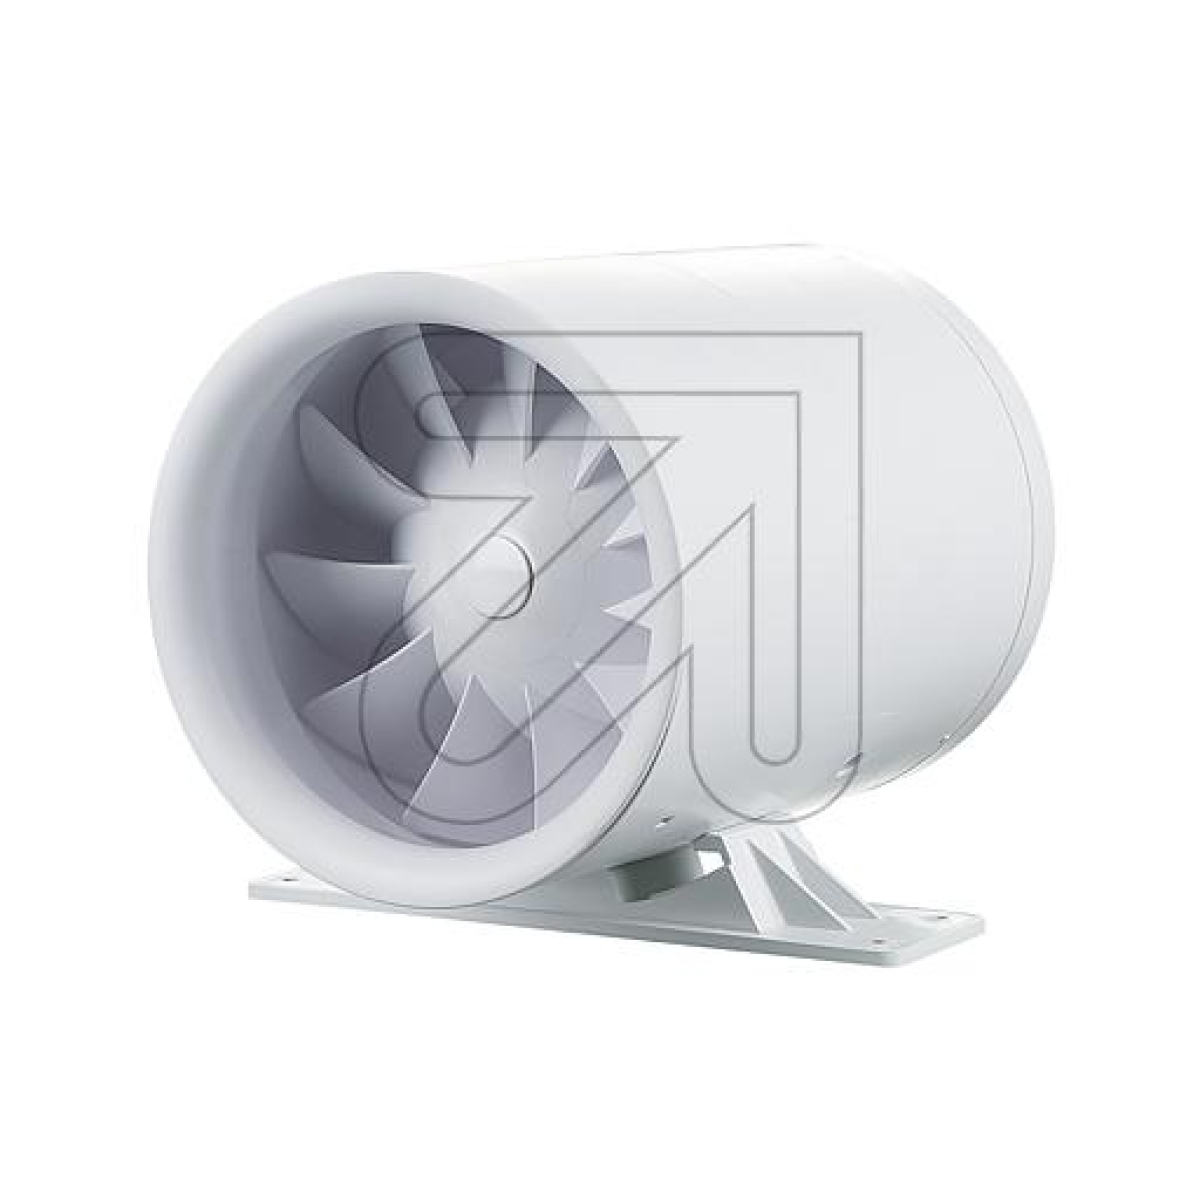 SIKU AIR TECHNOLOGIESInline fan SIKU 100 Turbine-k Duo T1Article-No: 441450